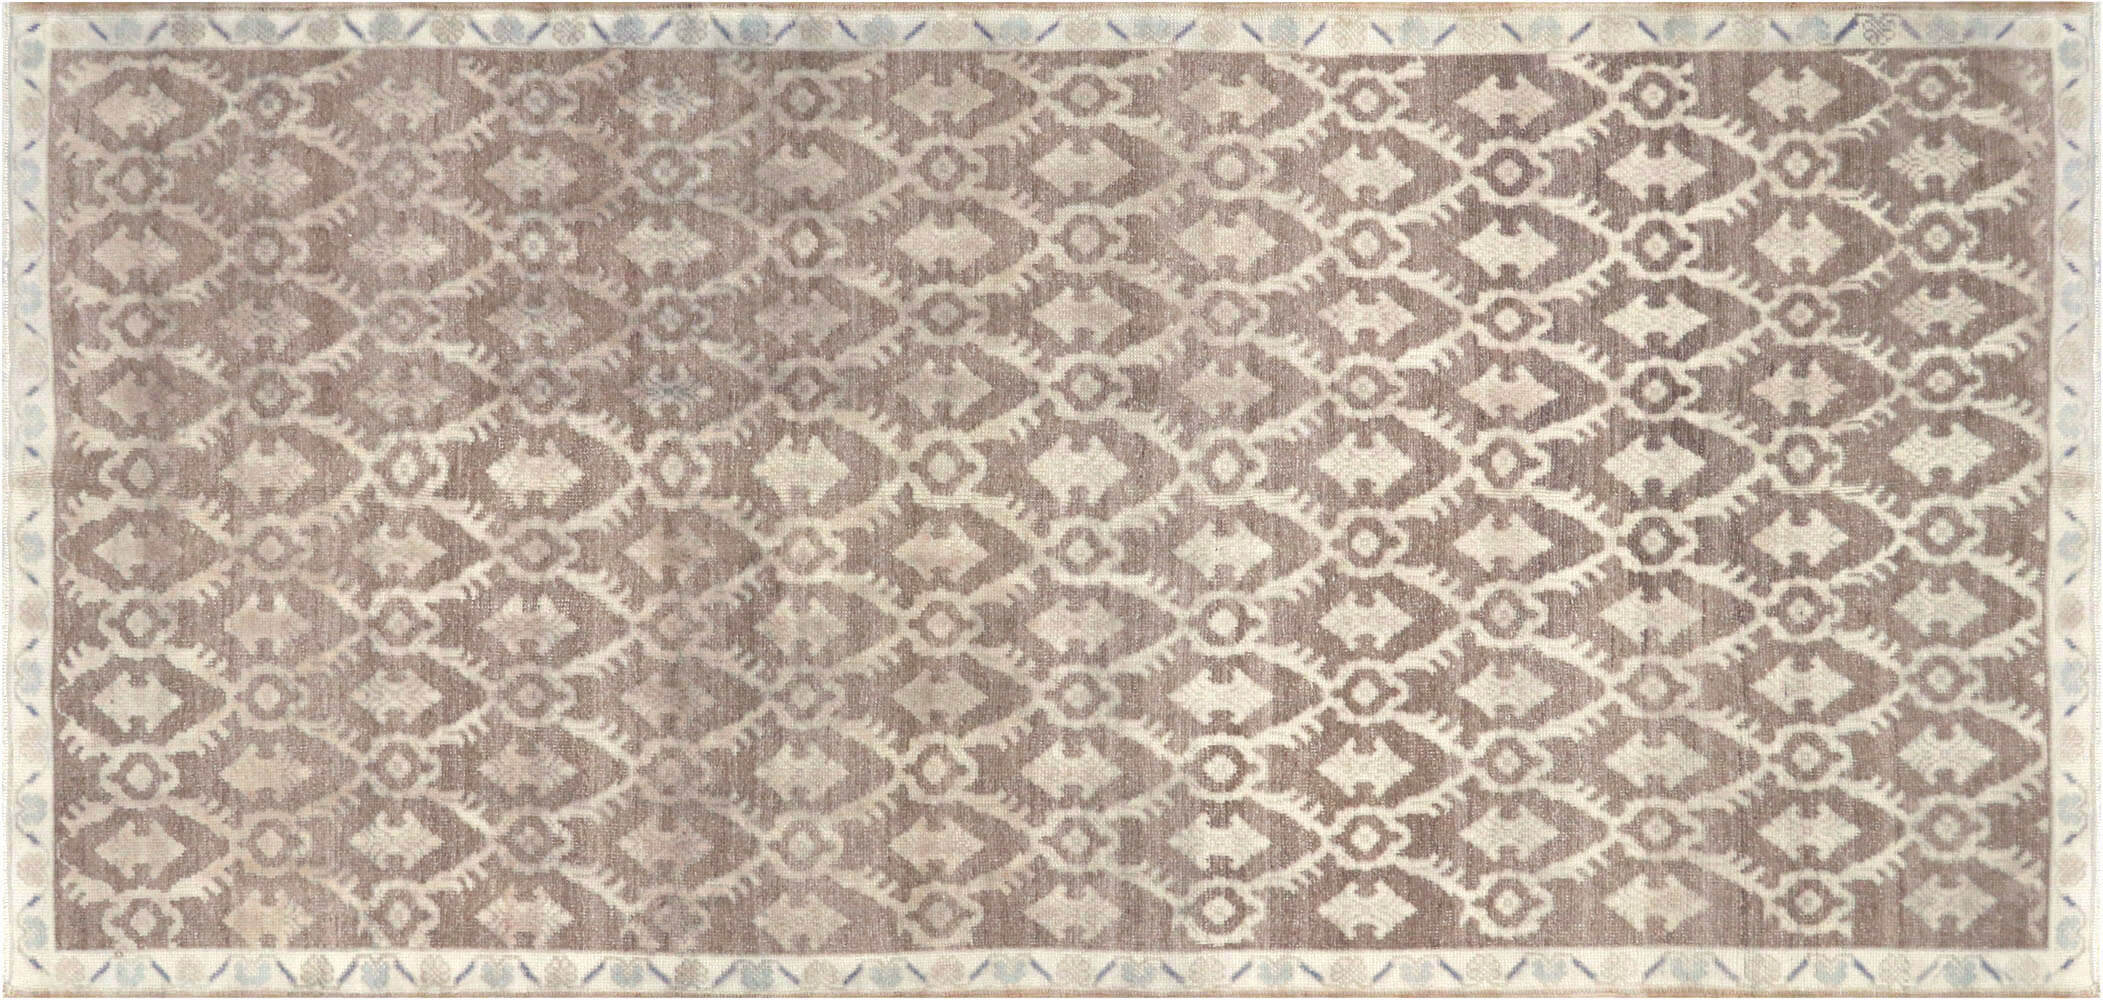 Vintage Turkish Oushak Carpet - 4'11" x 10'4"